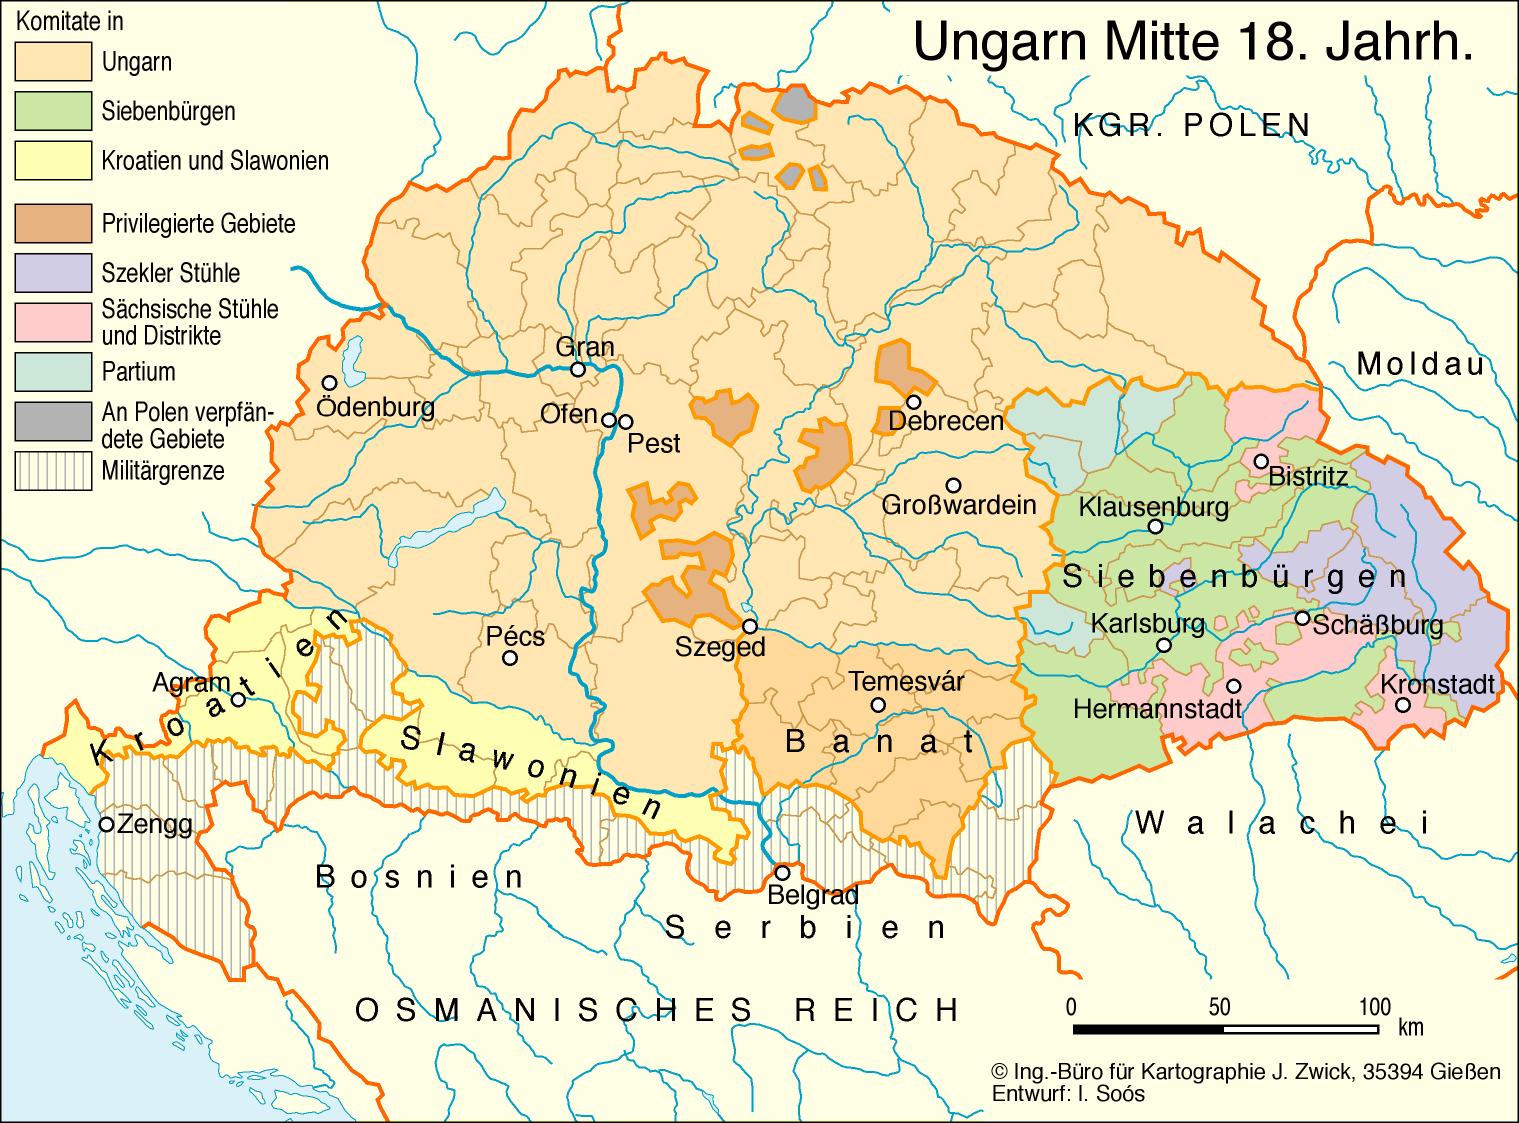 Ungarn Mitte 18. Jahrhundert